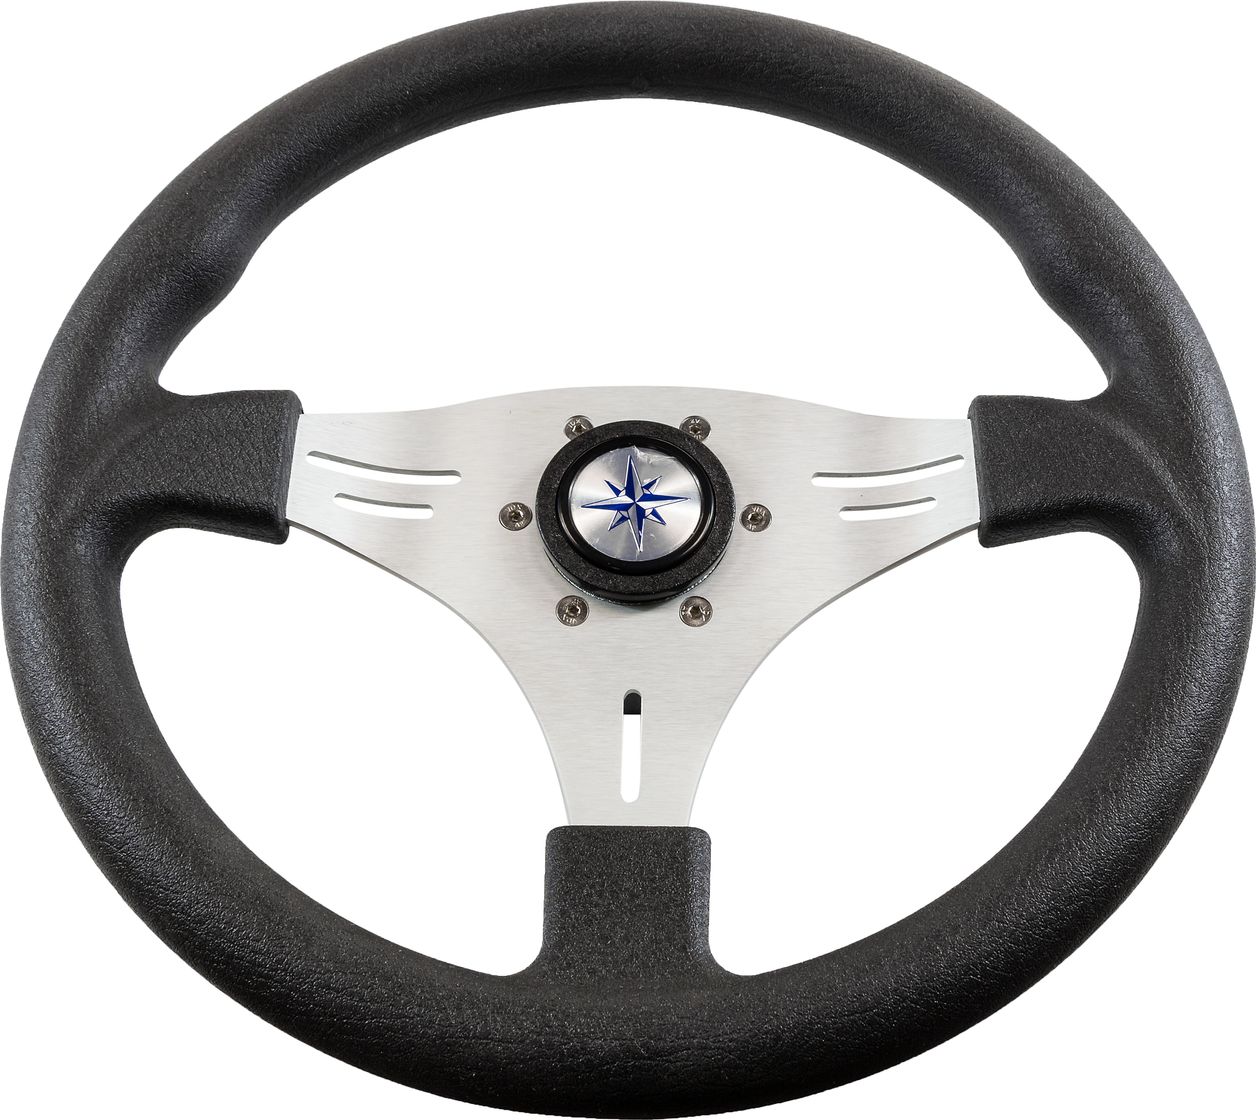 Рулевое колесо MANTA обод черный, спицы серебряные д. 355 мм VN70551-01 рулевое колесо orion обод черносиний спицы серебряные д 355 мм vn960101 99